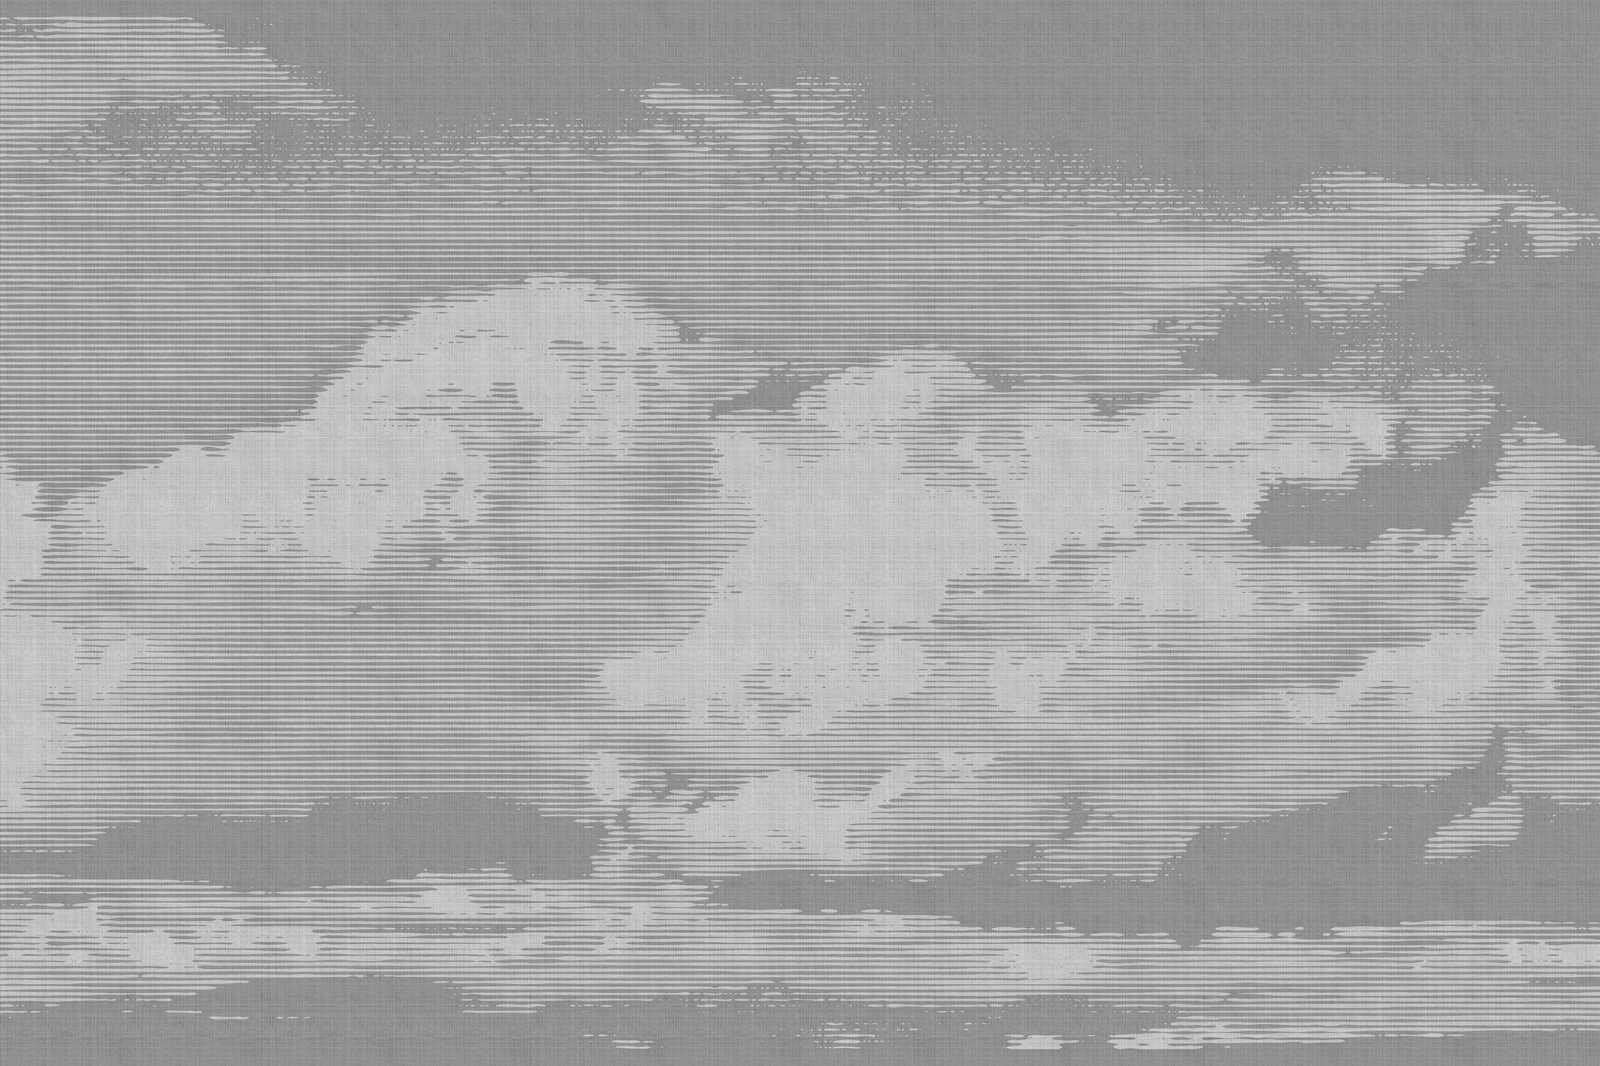             Nuvole 2 - Quadro su tela in lino naturale con motivo di nuvole - 0,90 m x 0,60 m
        